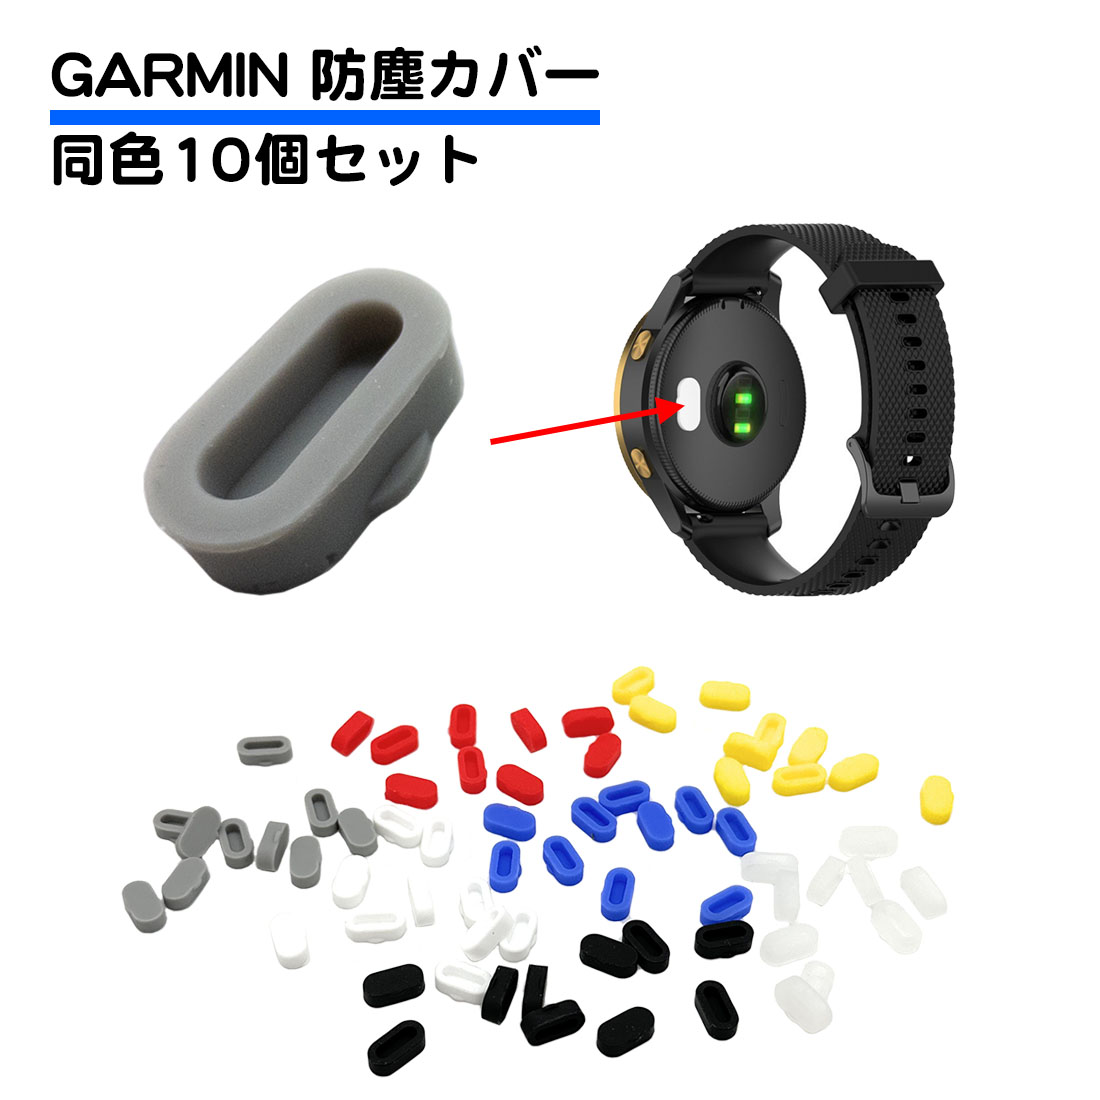 10個セット Garmin用 防塵プラグ カバー シリコン キャップ 互換プラグ 保護 充電 防水 ガーミン Fenix 5 6 シリーズ Vivoactive 3 Vivosport など 送料無料